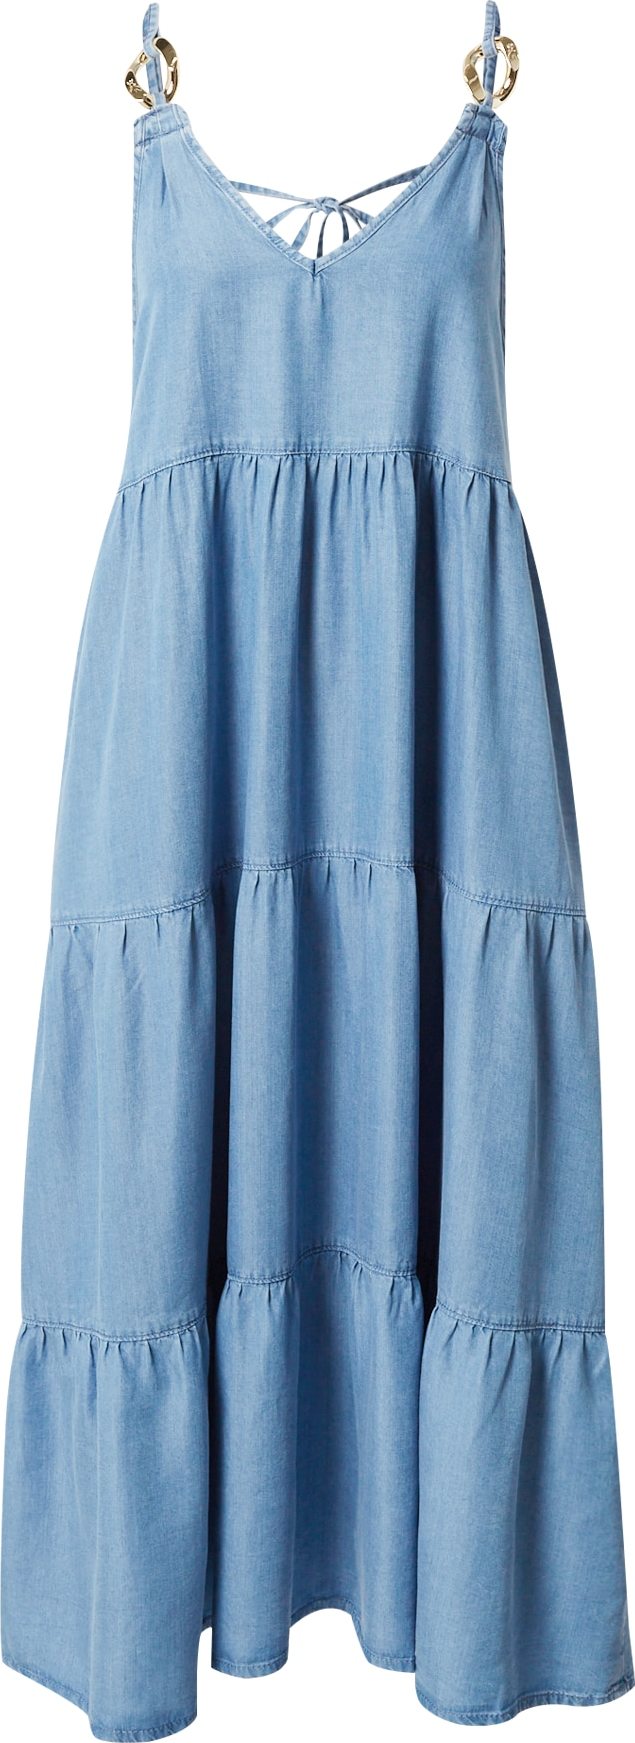 PATRIZIA PEPE Letní šaty modrá džínovina